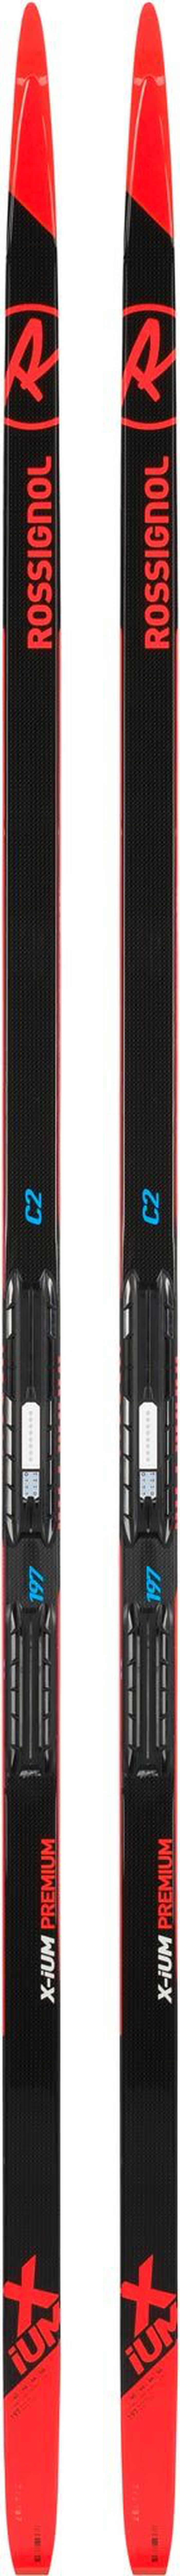 Unisex Nordic Racing Skis X-Ium Classic Premium C2-Ifp